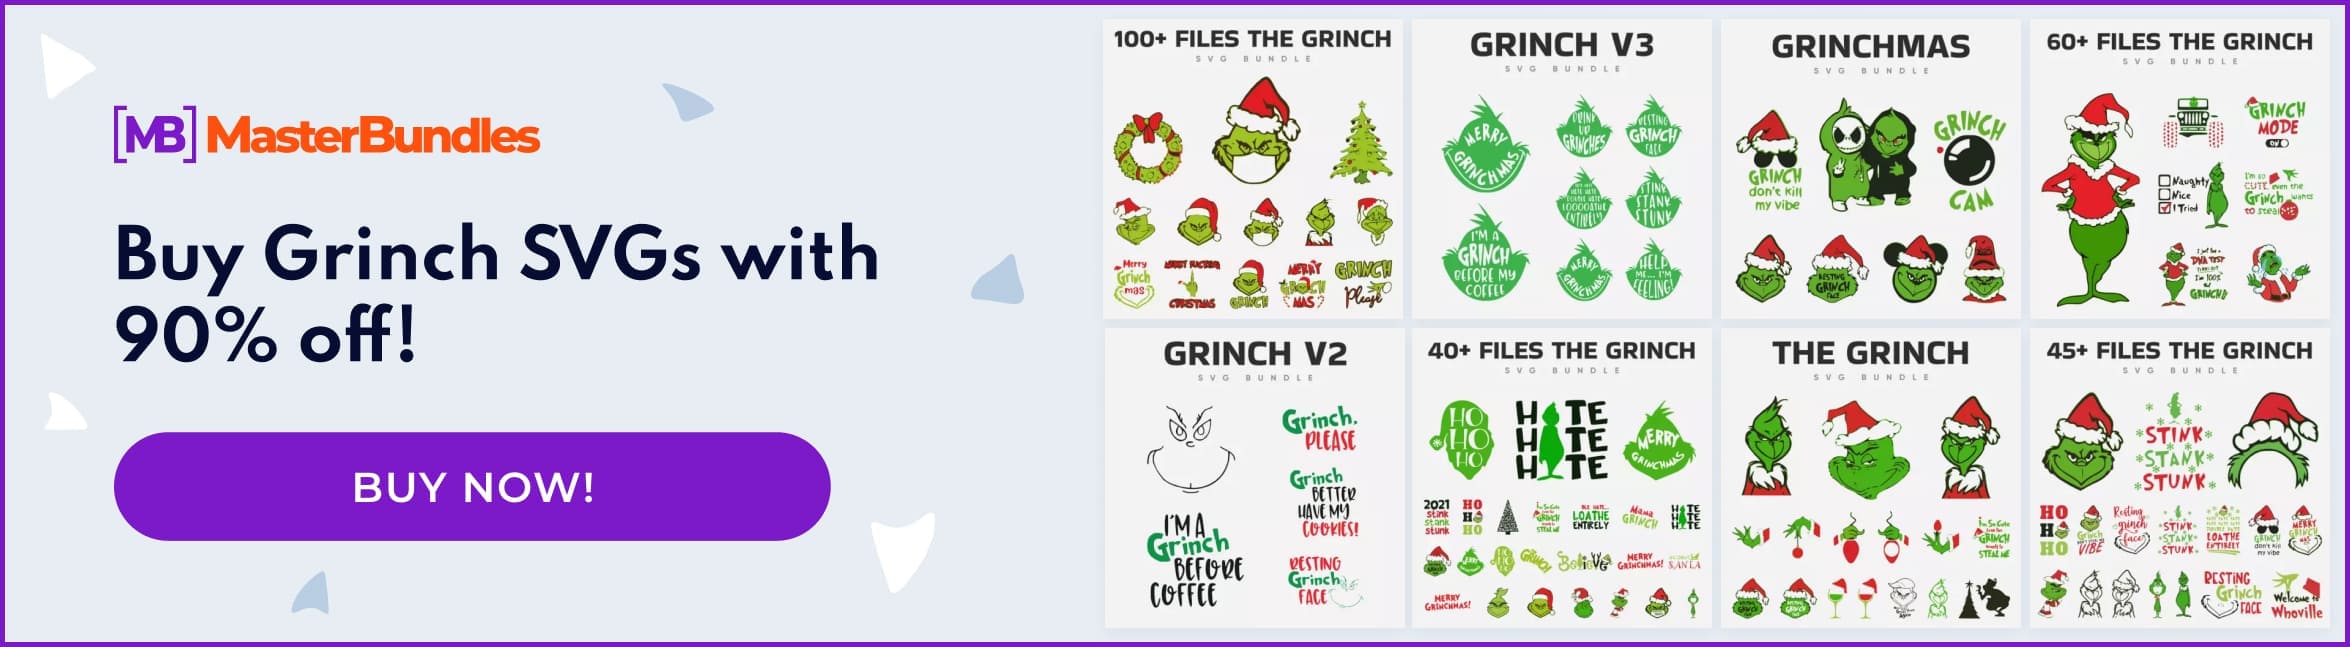 Banner for Grinch SVG Images.